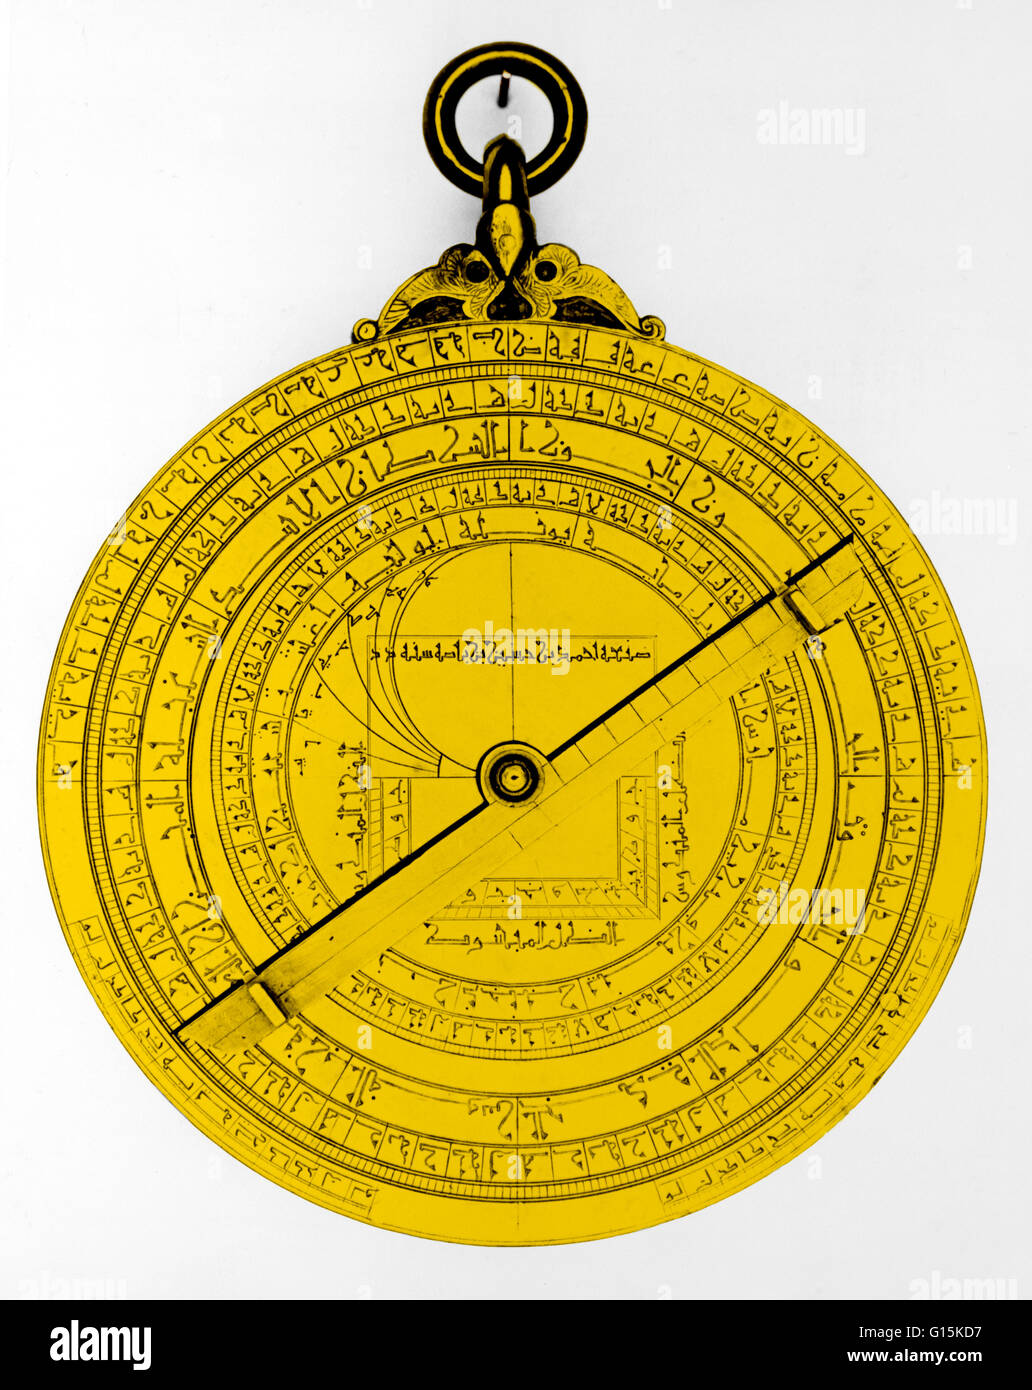 Veranschaulichung ein 15. Jahrhundert arabisches Astrolabium. Das Astrolabium dient viele Funktionen, einschließlich Vermessung und prognostizieren die Positionen der Sterne, Planeten, die Sonne und den Mond. Stockfoto